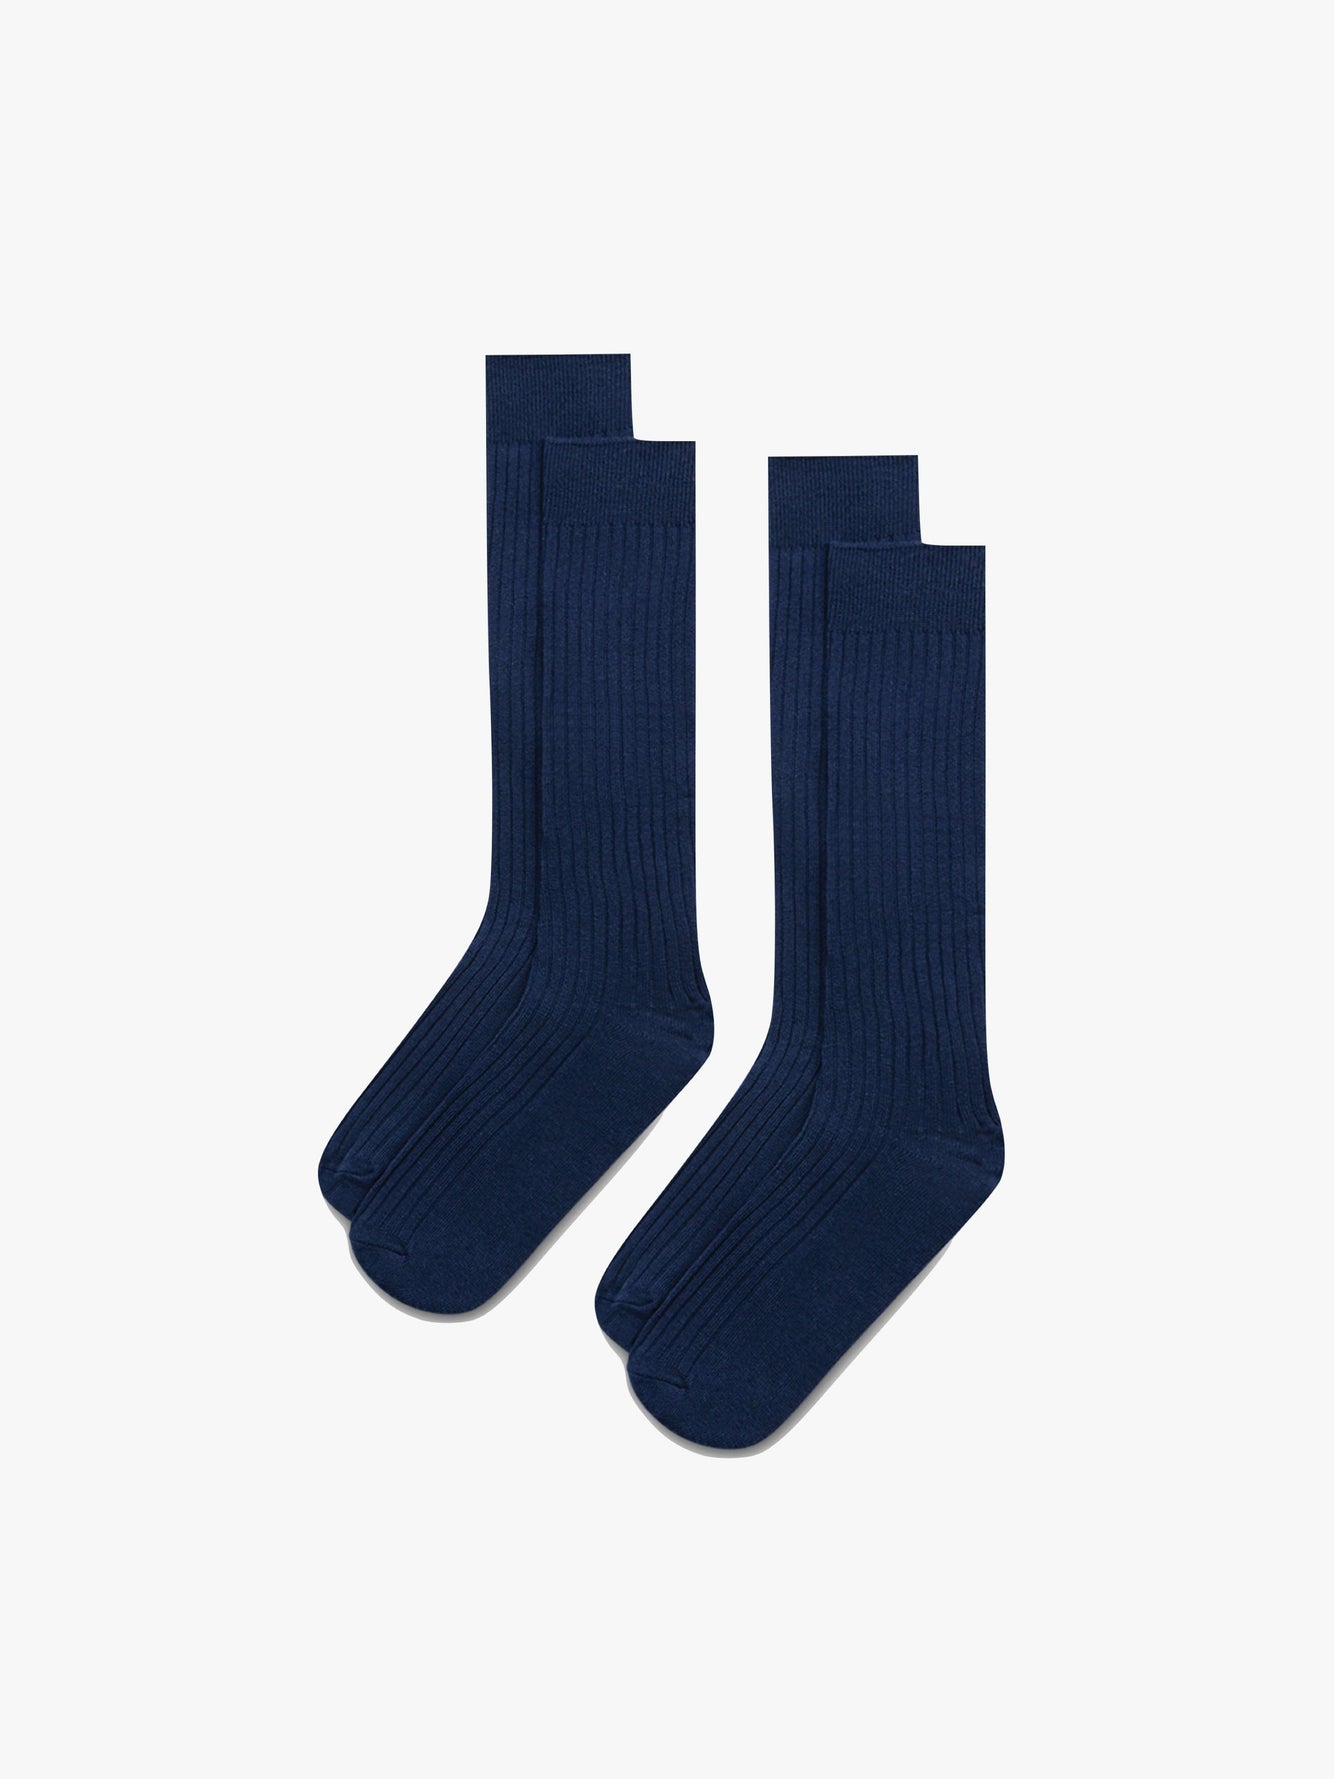 Le Socks - Cotton Ribbed Grand Navy Pima Mar